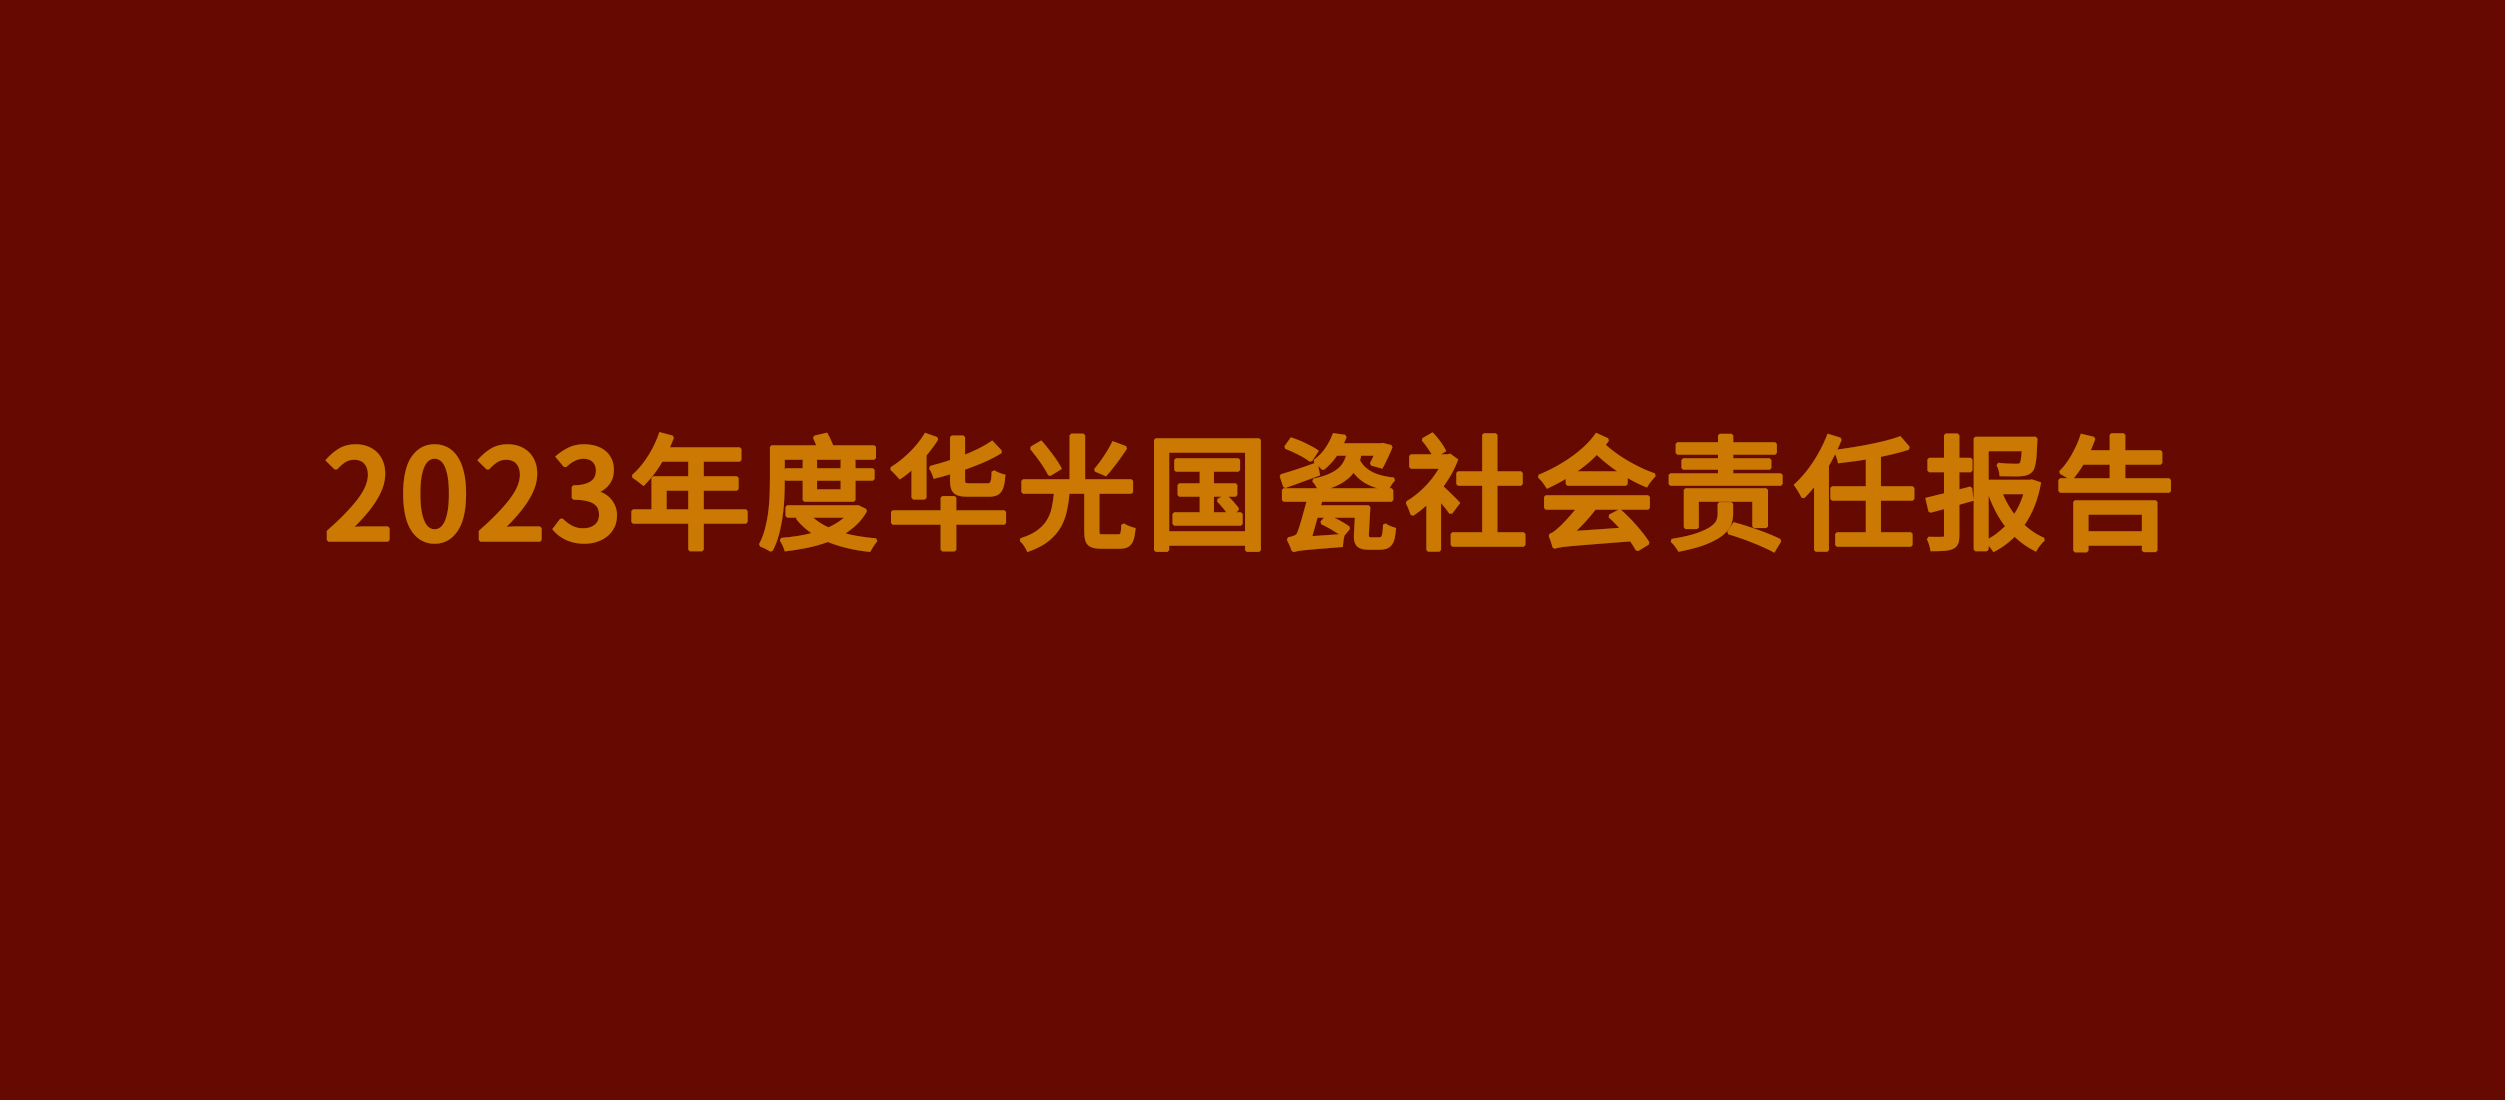 2023年度华光国瓷社会责任报告